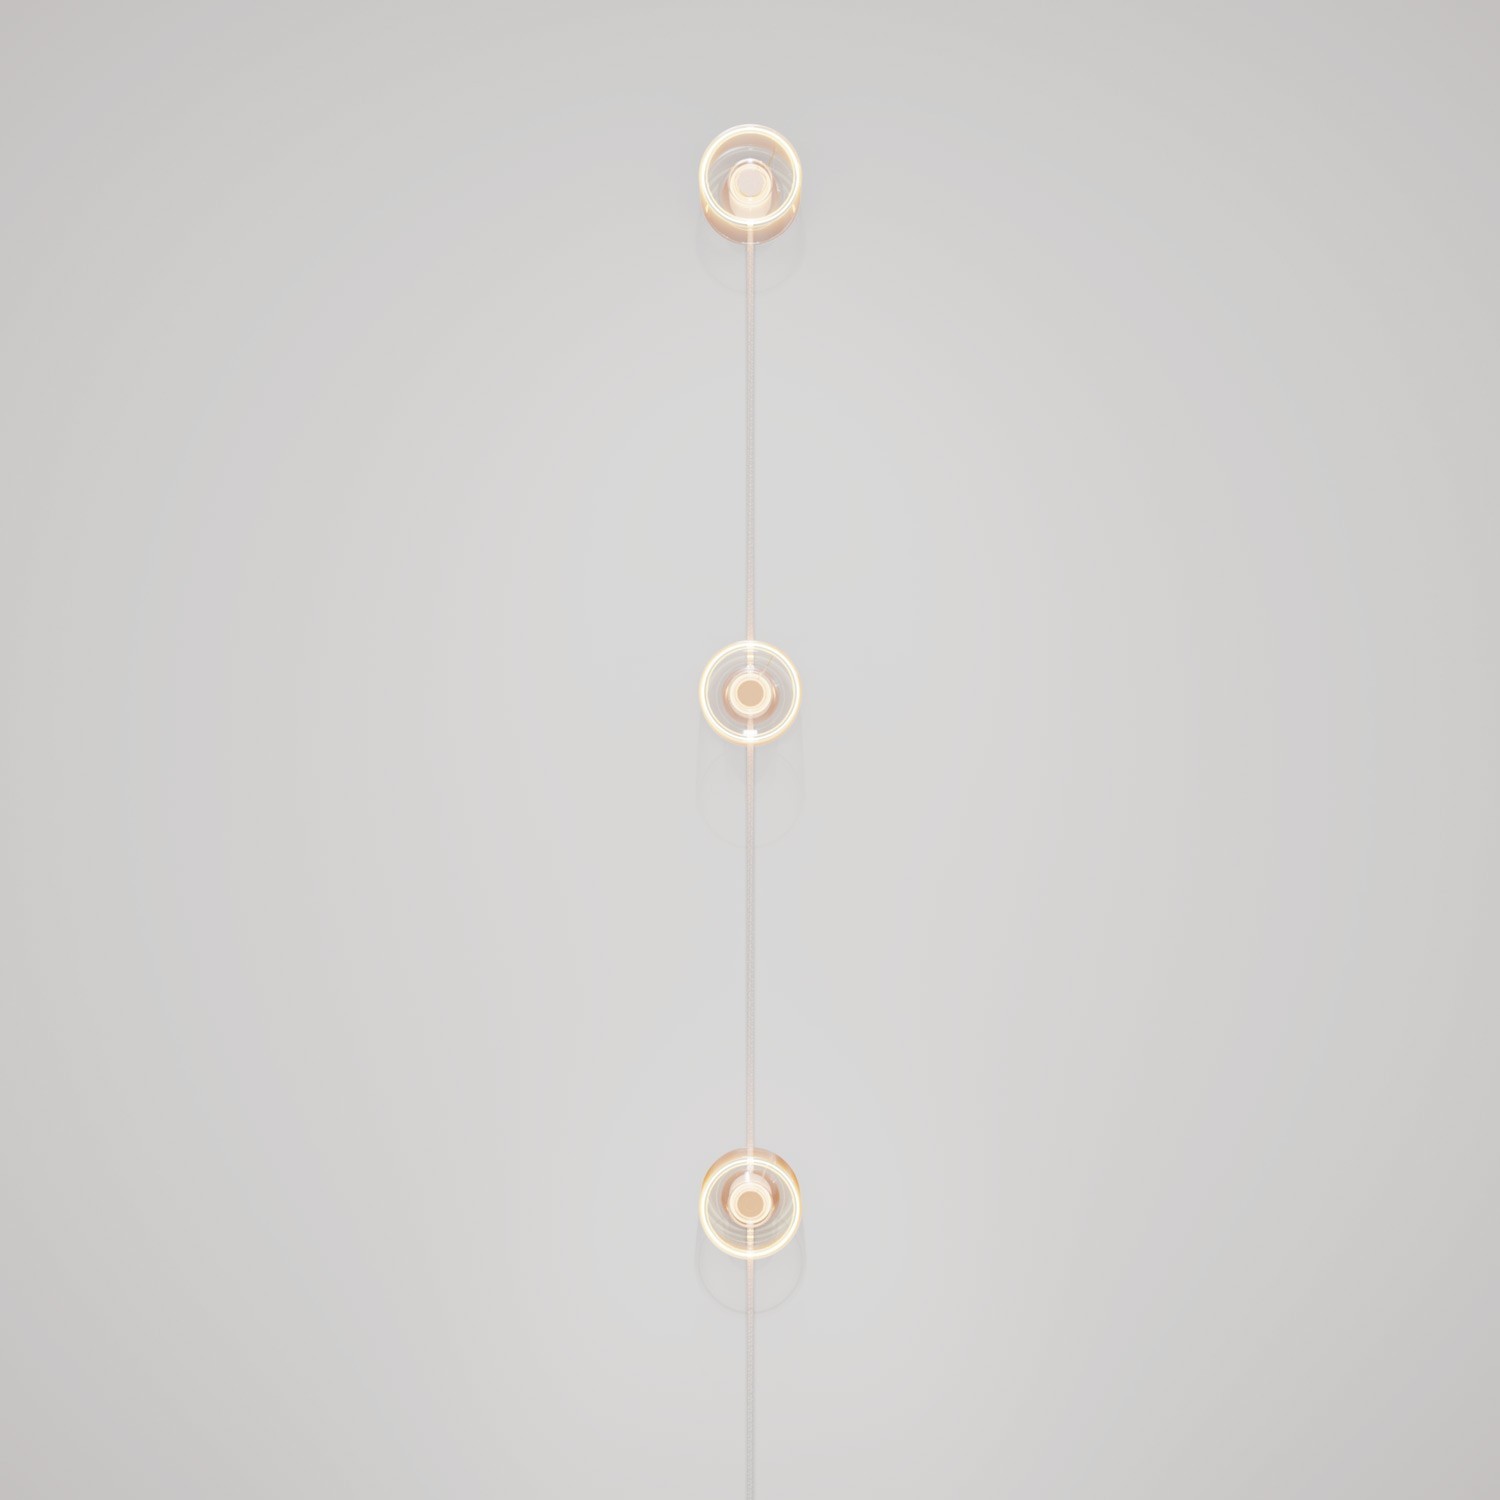 Spostaluce-Wandlampe mit Stecker und 3 Ghost-Glühbirnen